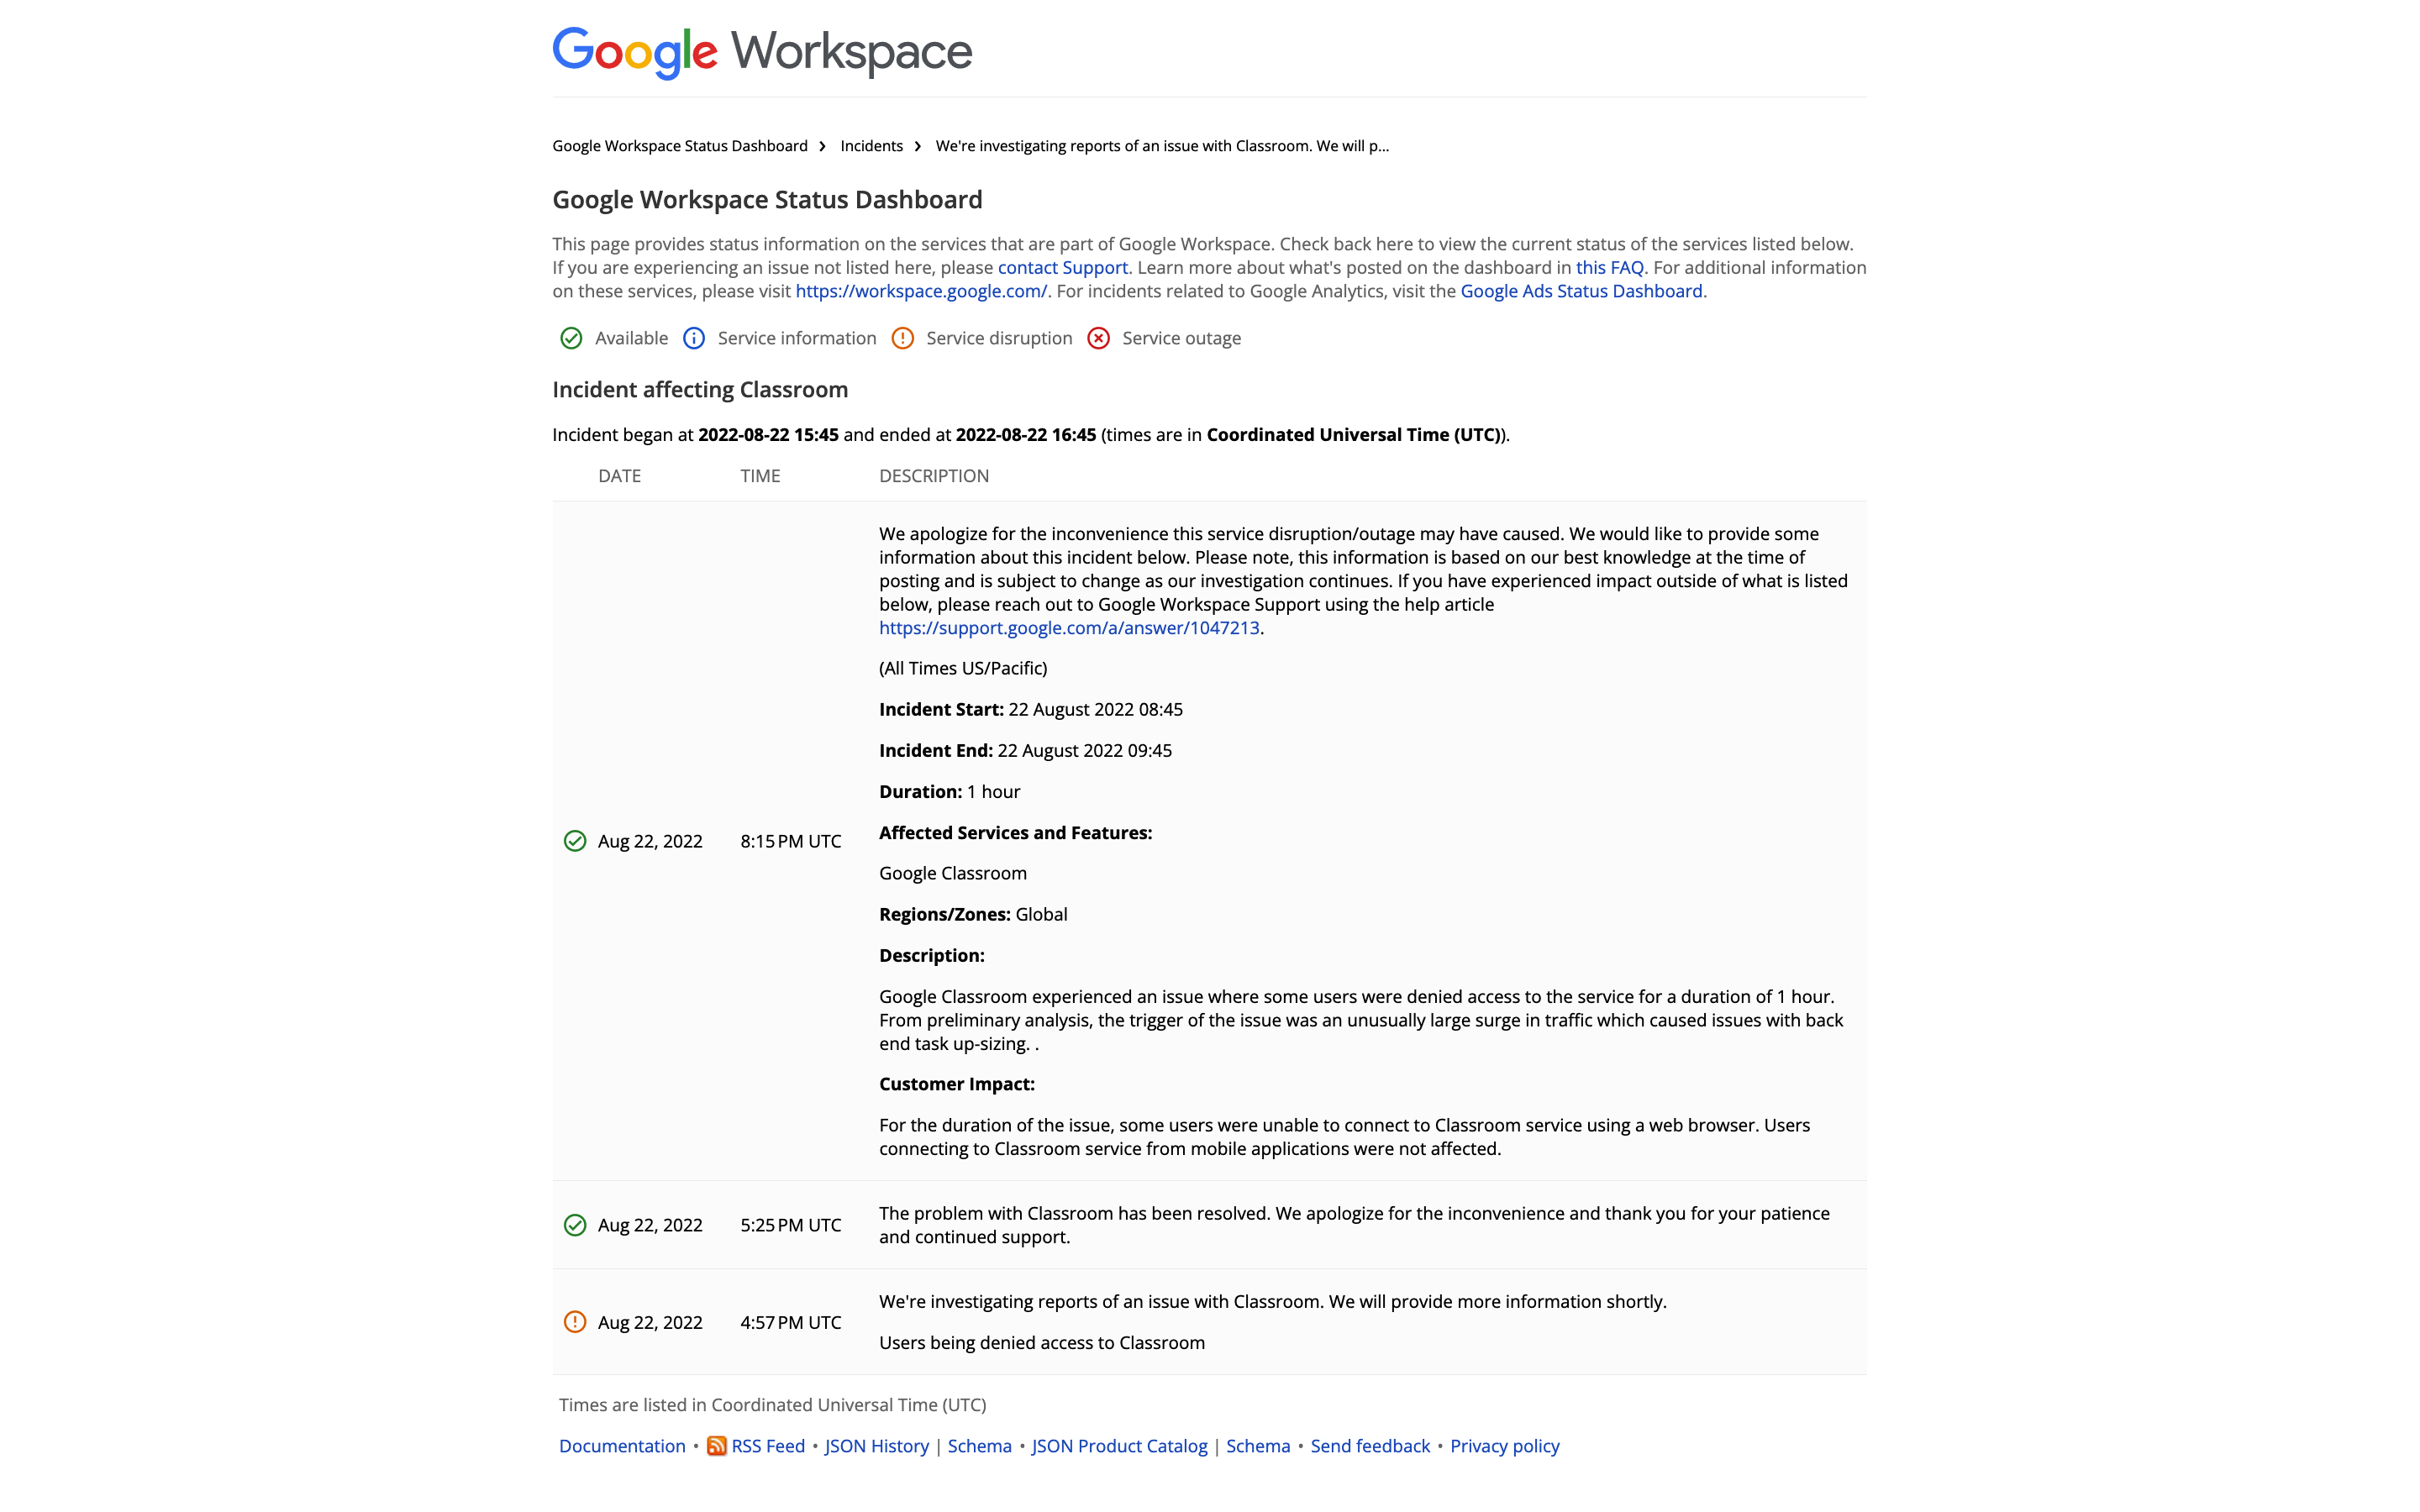 Google Classroom incident description